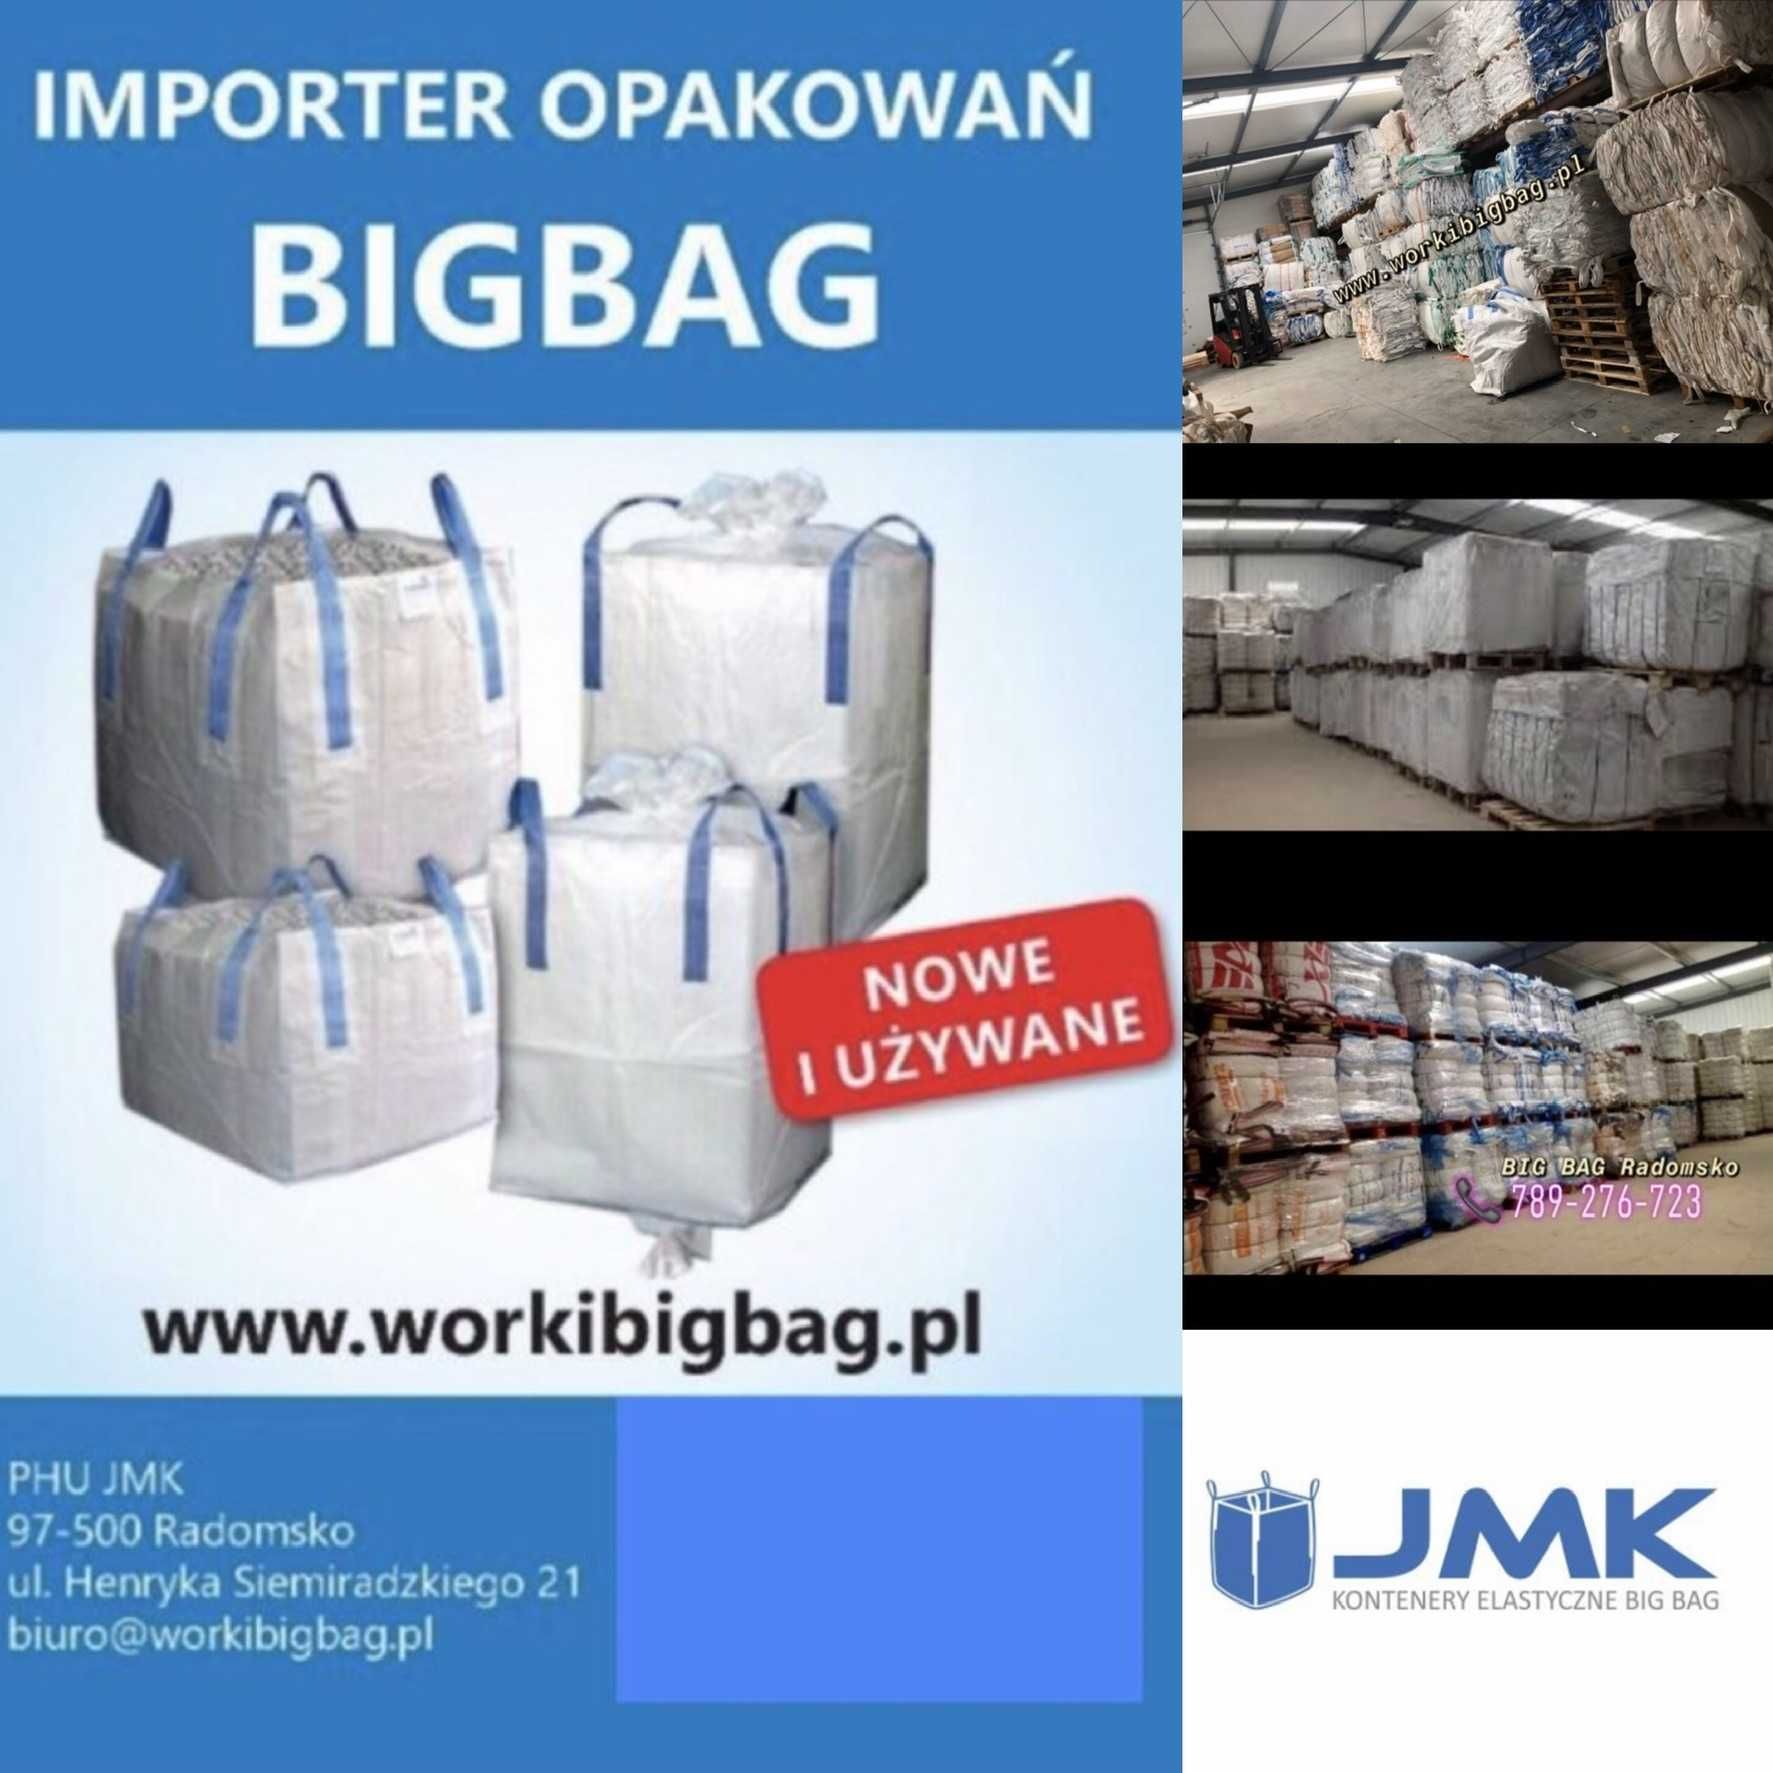 Worki Big Bag 120/90/90 NOWE Big Bag Bagi Wysyłka w 24h